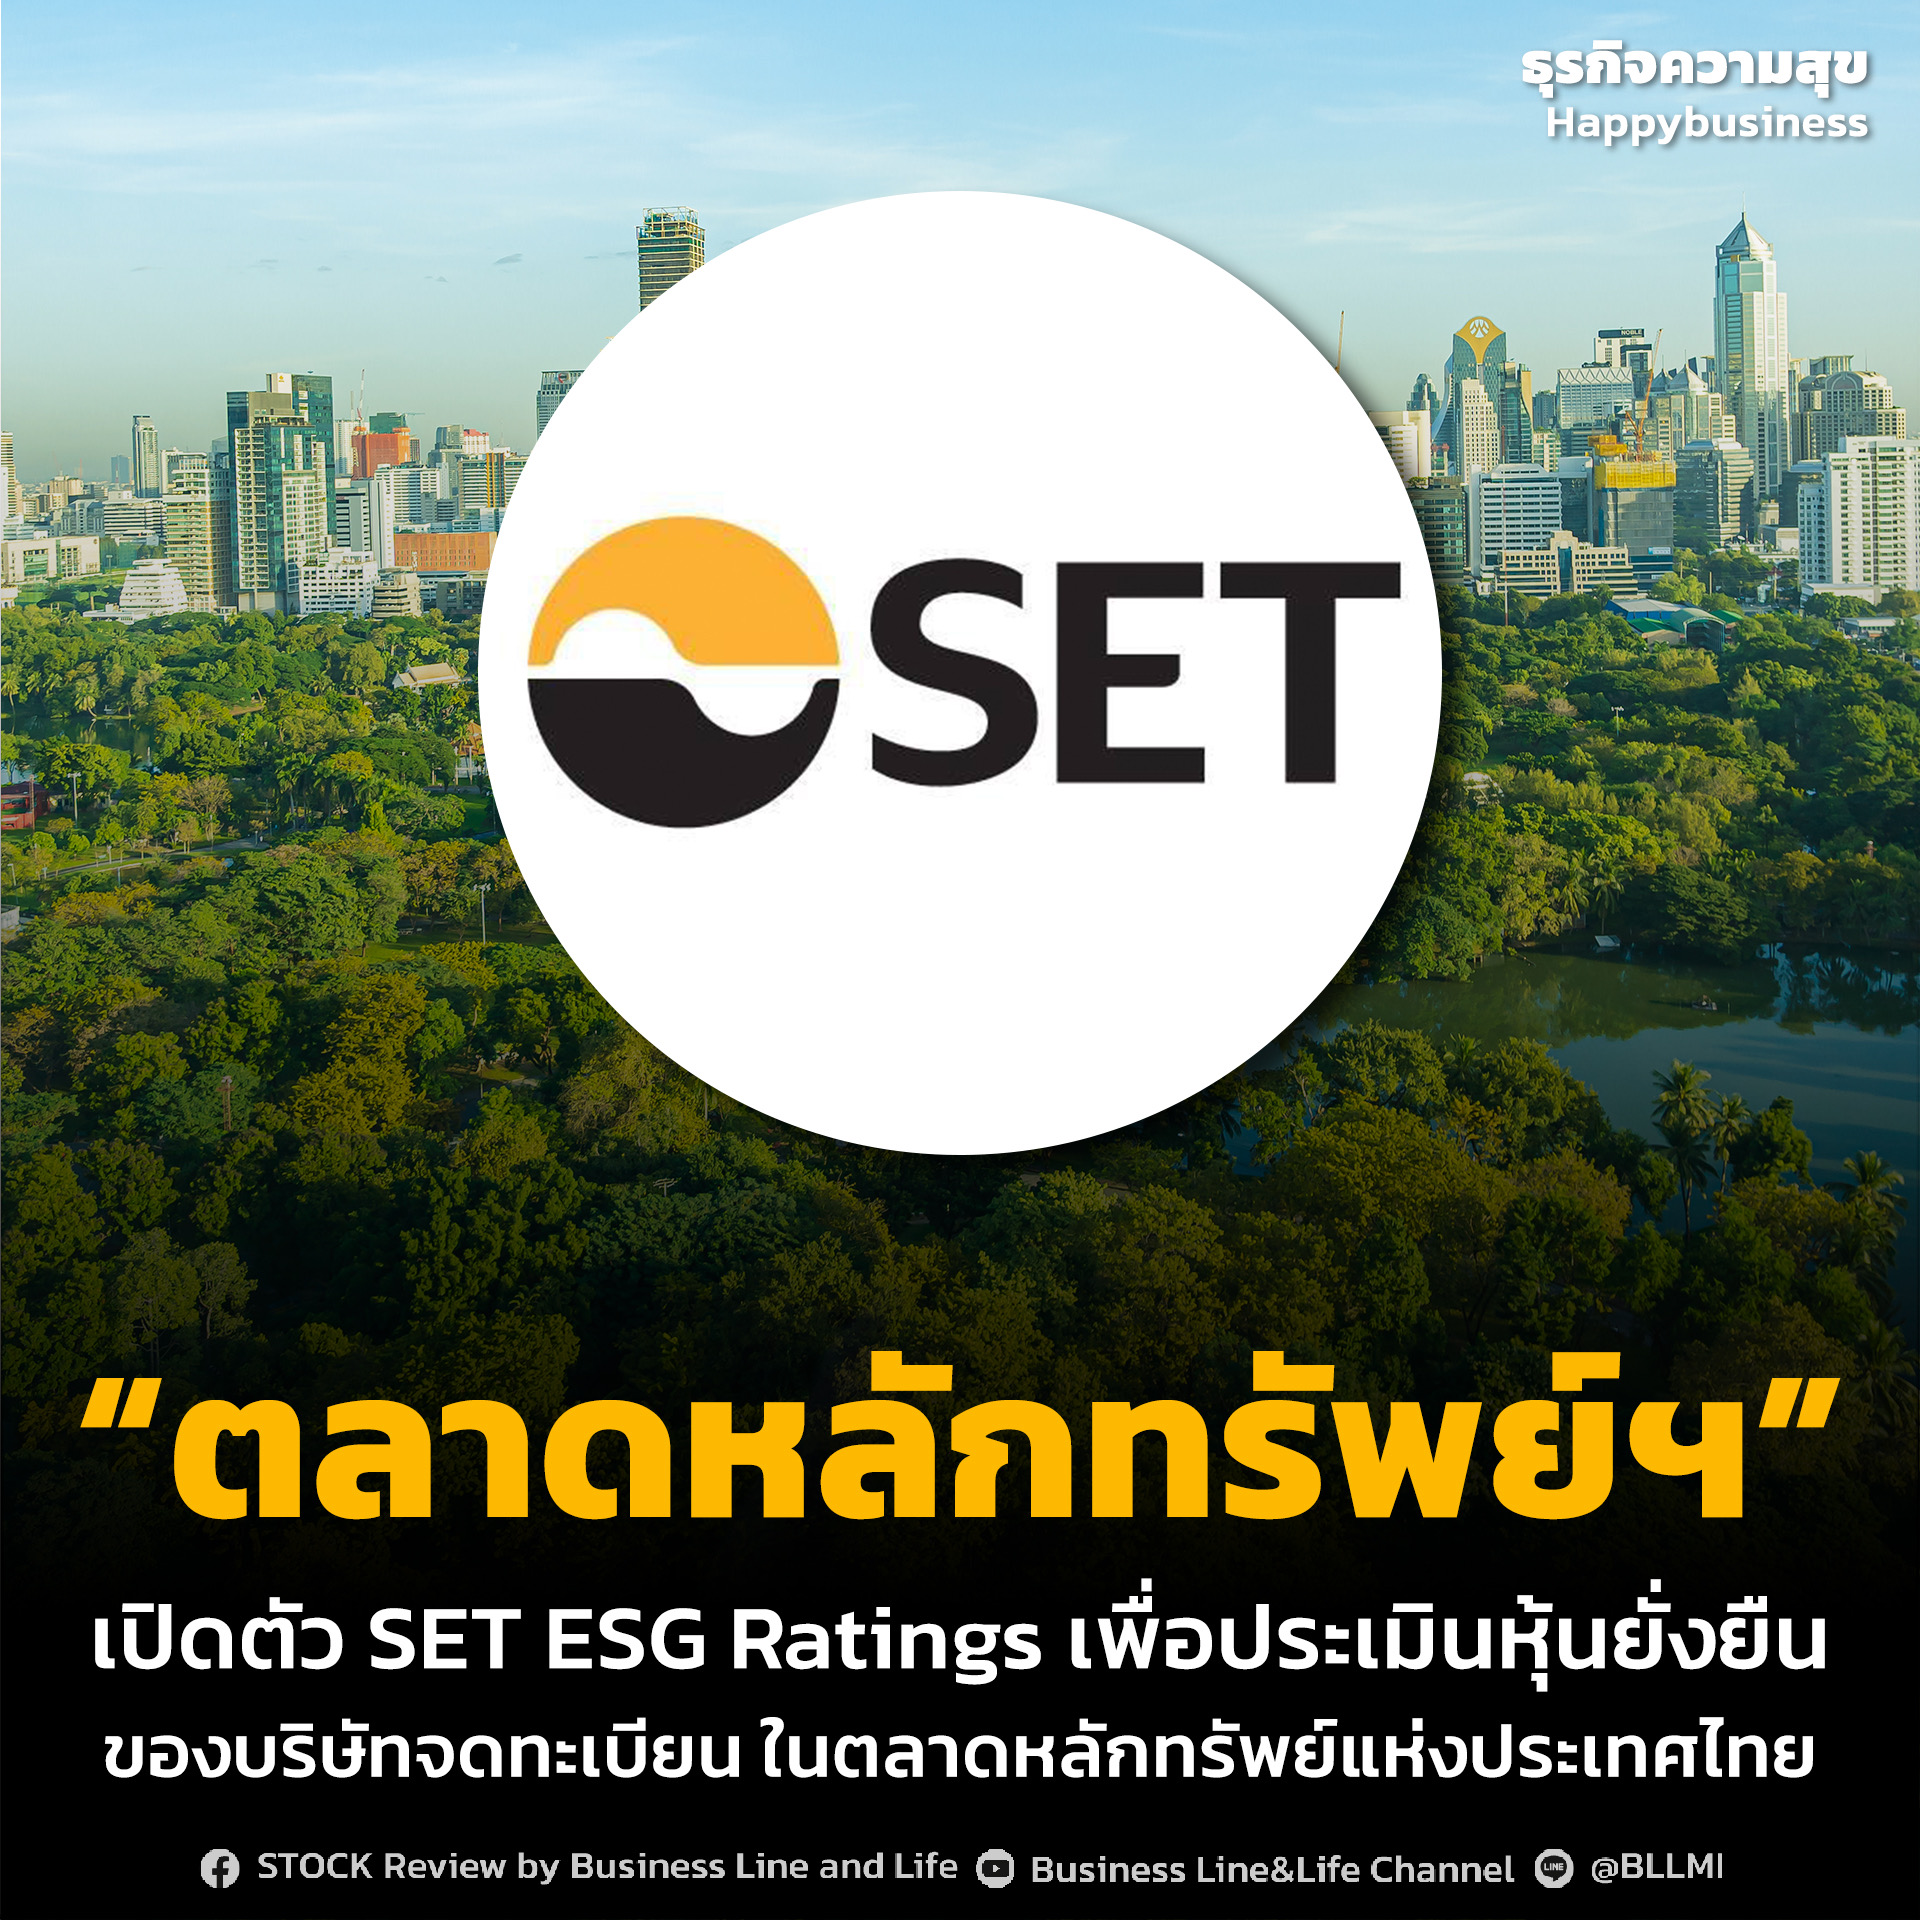 “ตลาดหลักทรัพย์ฯ” เปิดตัว SET ESG Ratings เพื่อประเมินหุ้นยั่งยืนของบริษัทจดทะเบียน ในตลาดหลักทรัพย์แห่งประเทศไทย